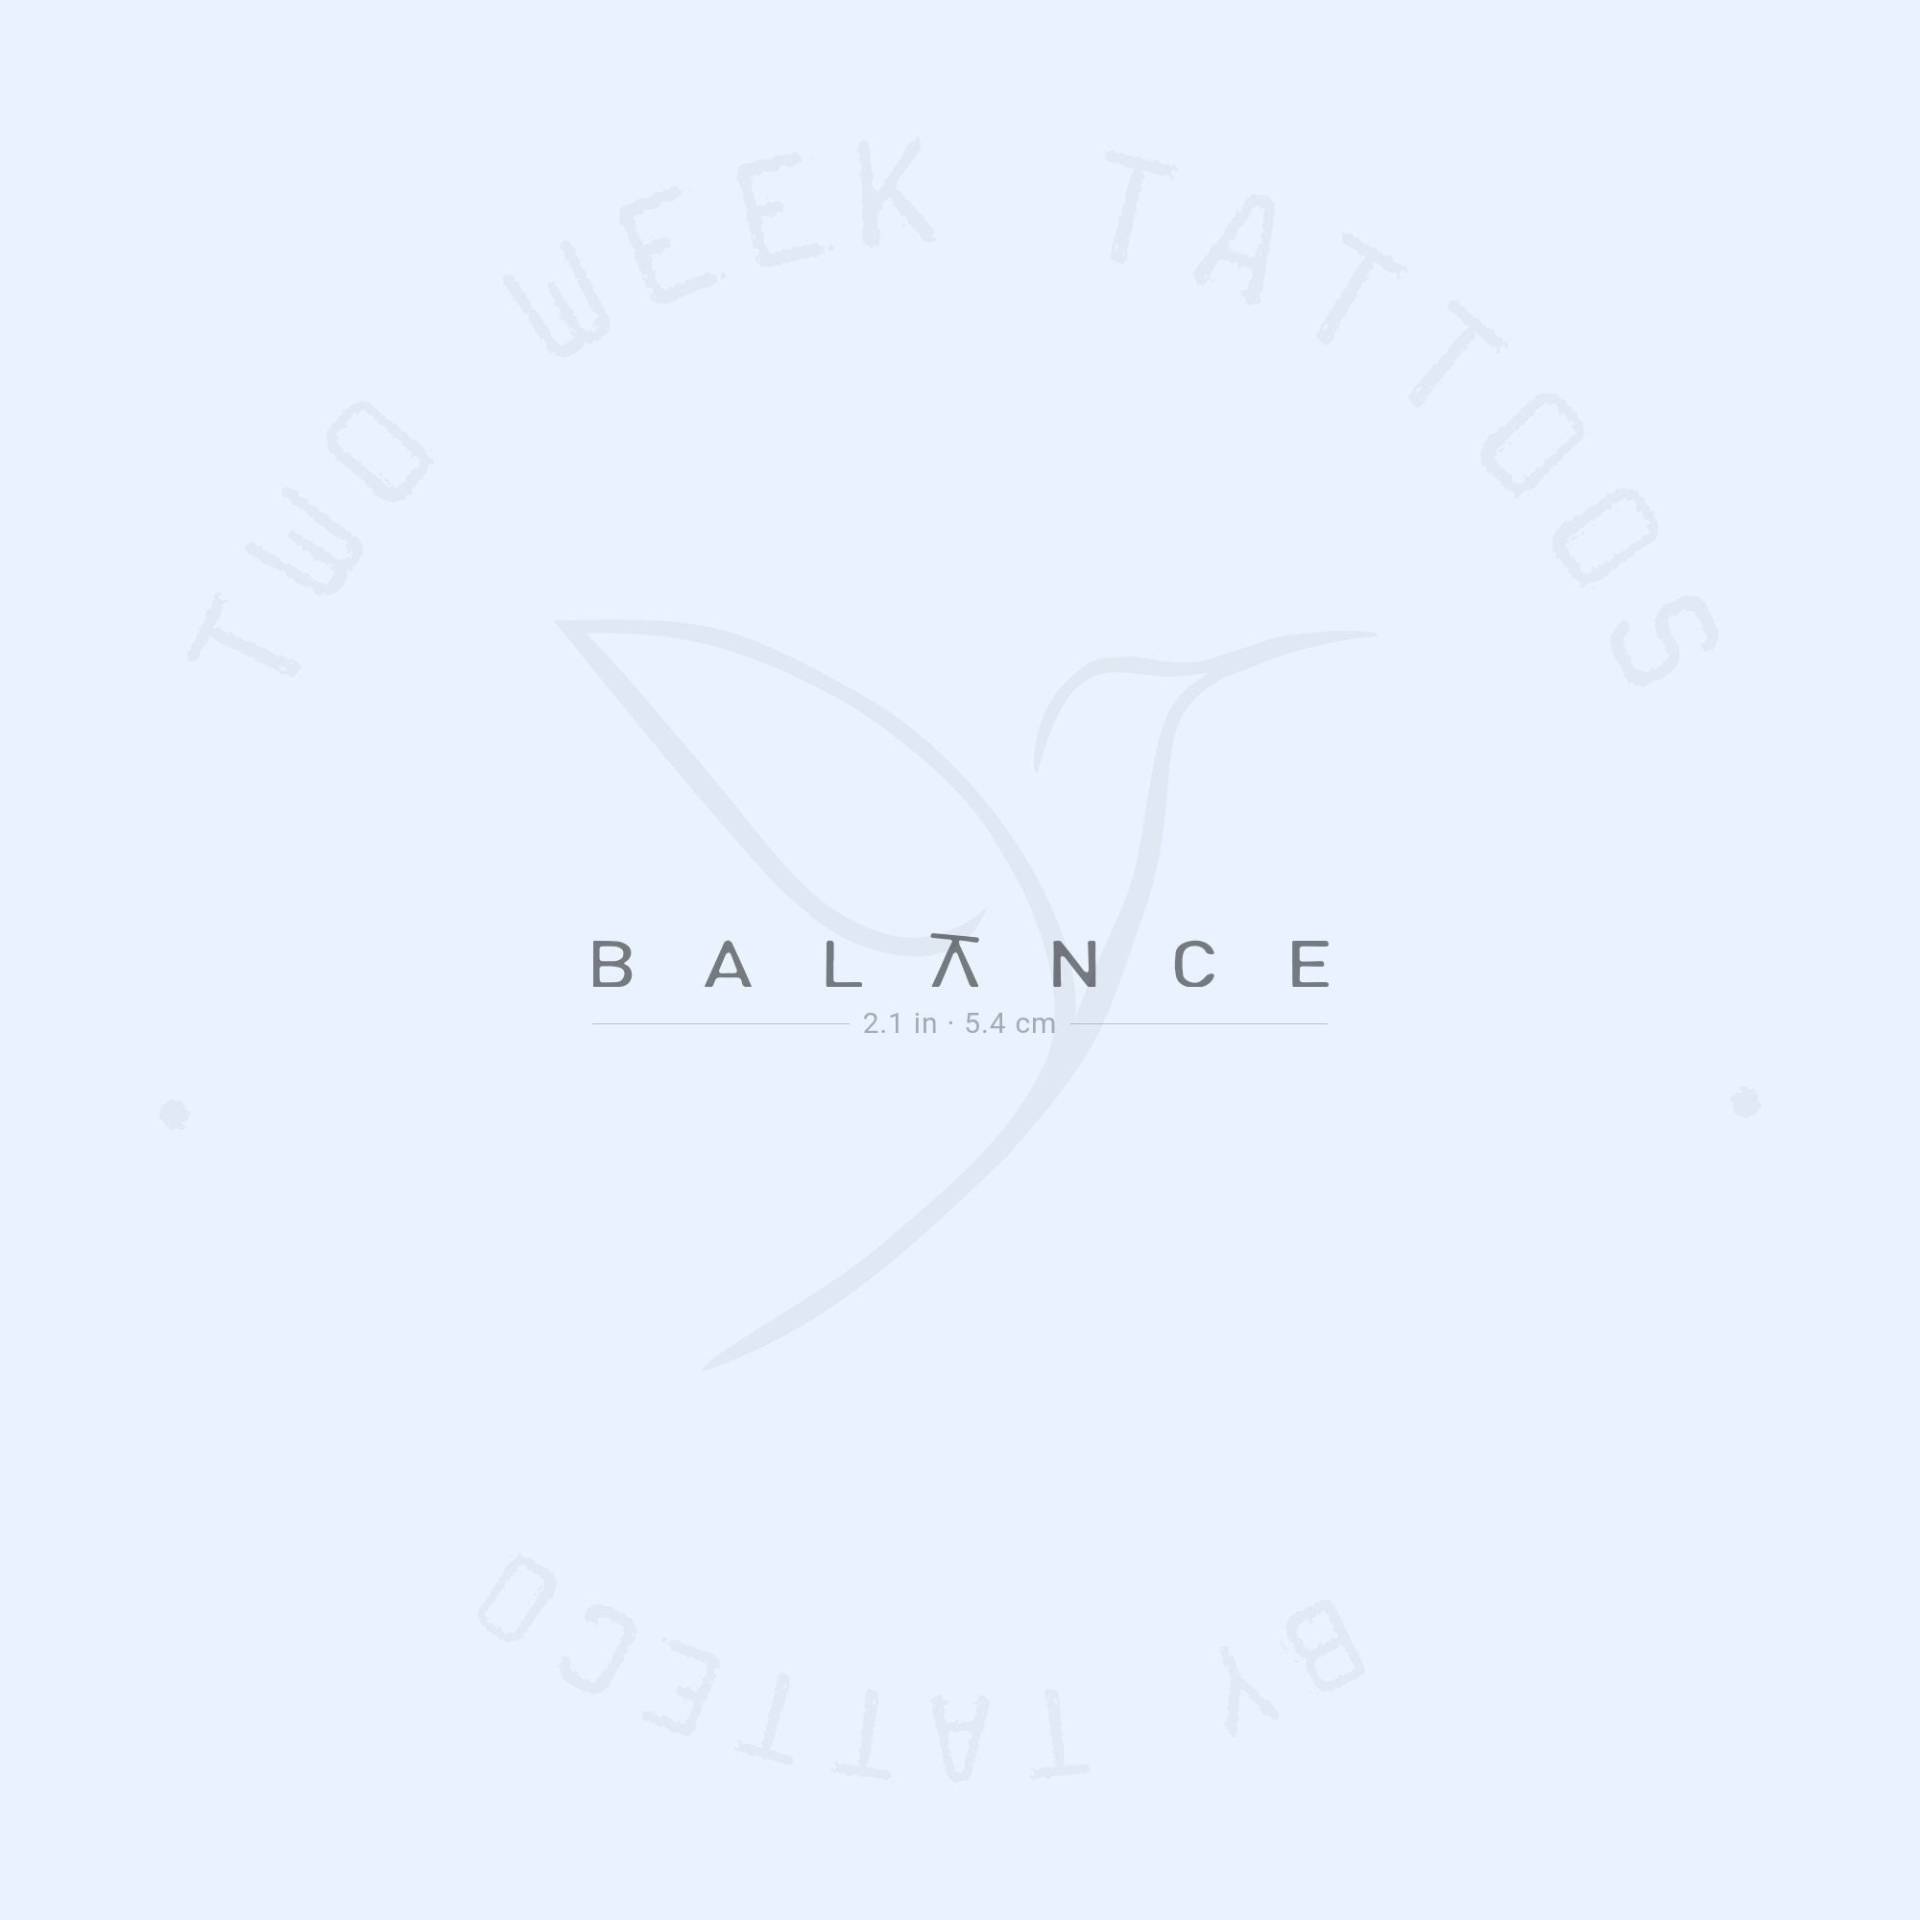 Balance Semi-Permanent 2-Wochen Tattoo | 2Er Set von twoweektattoos